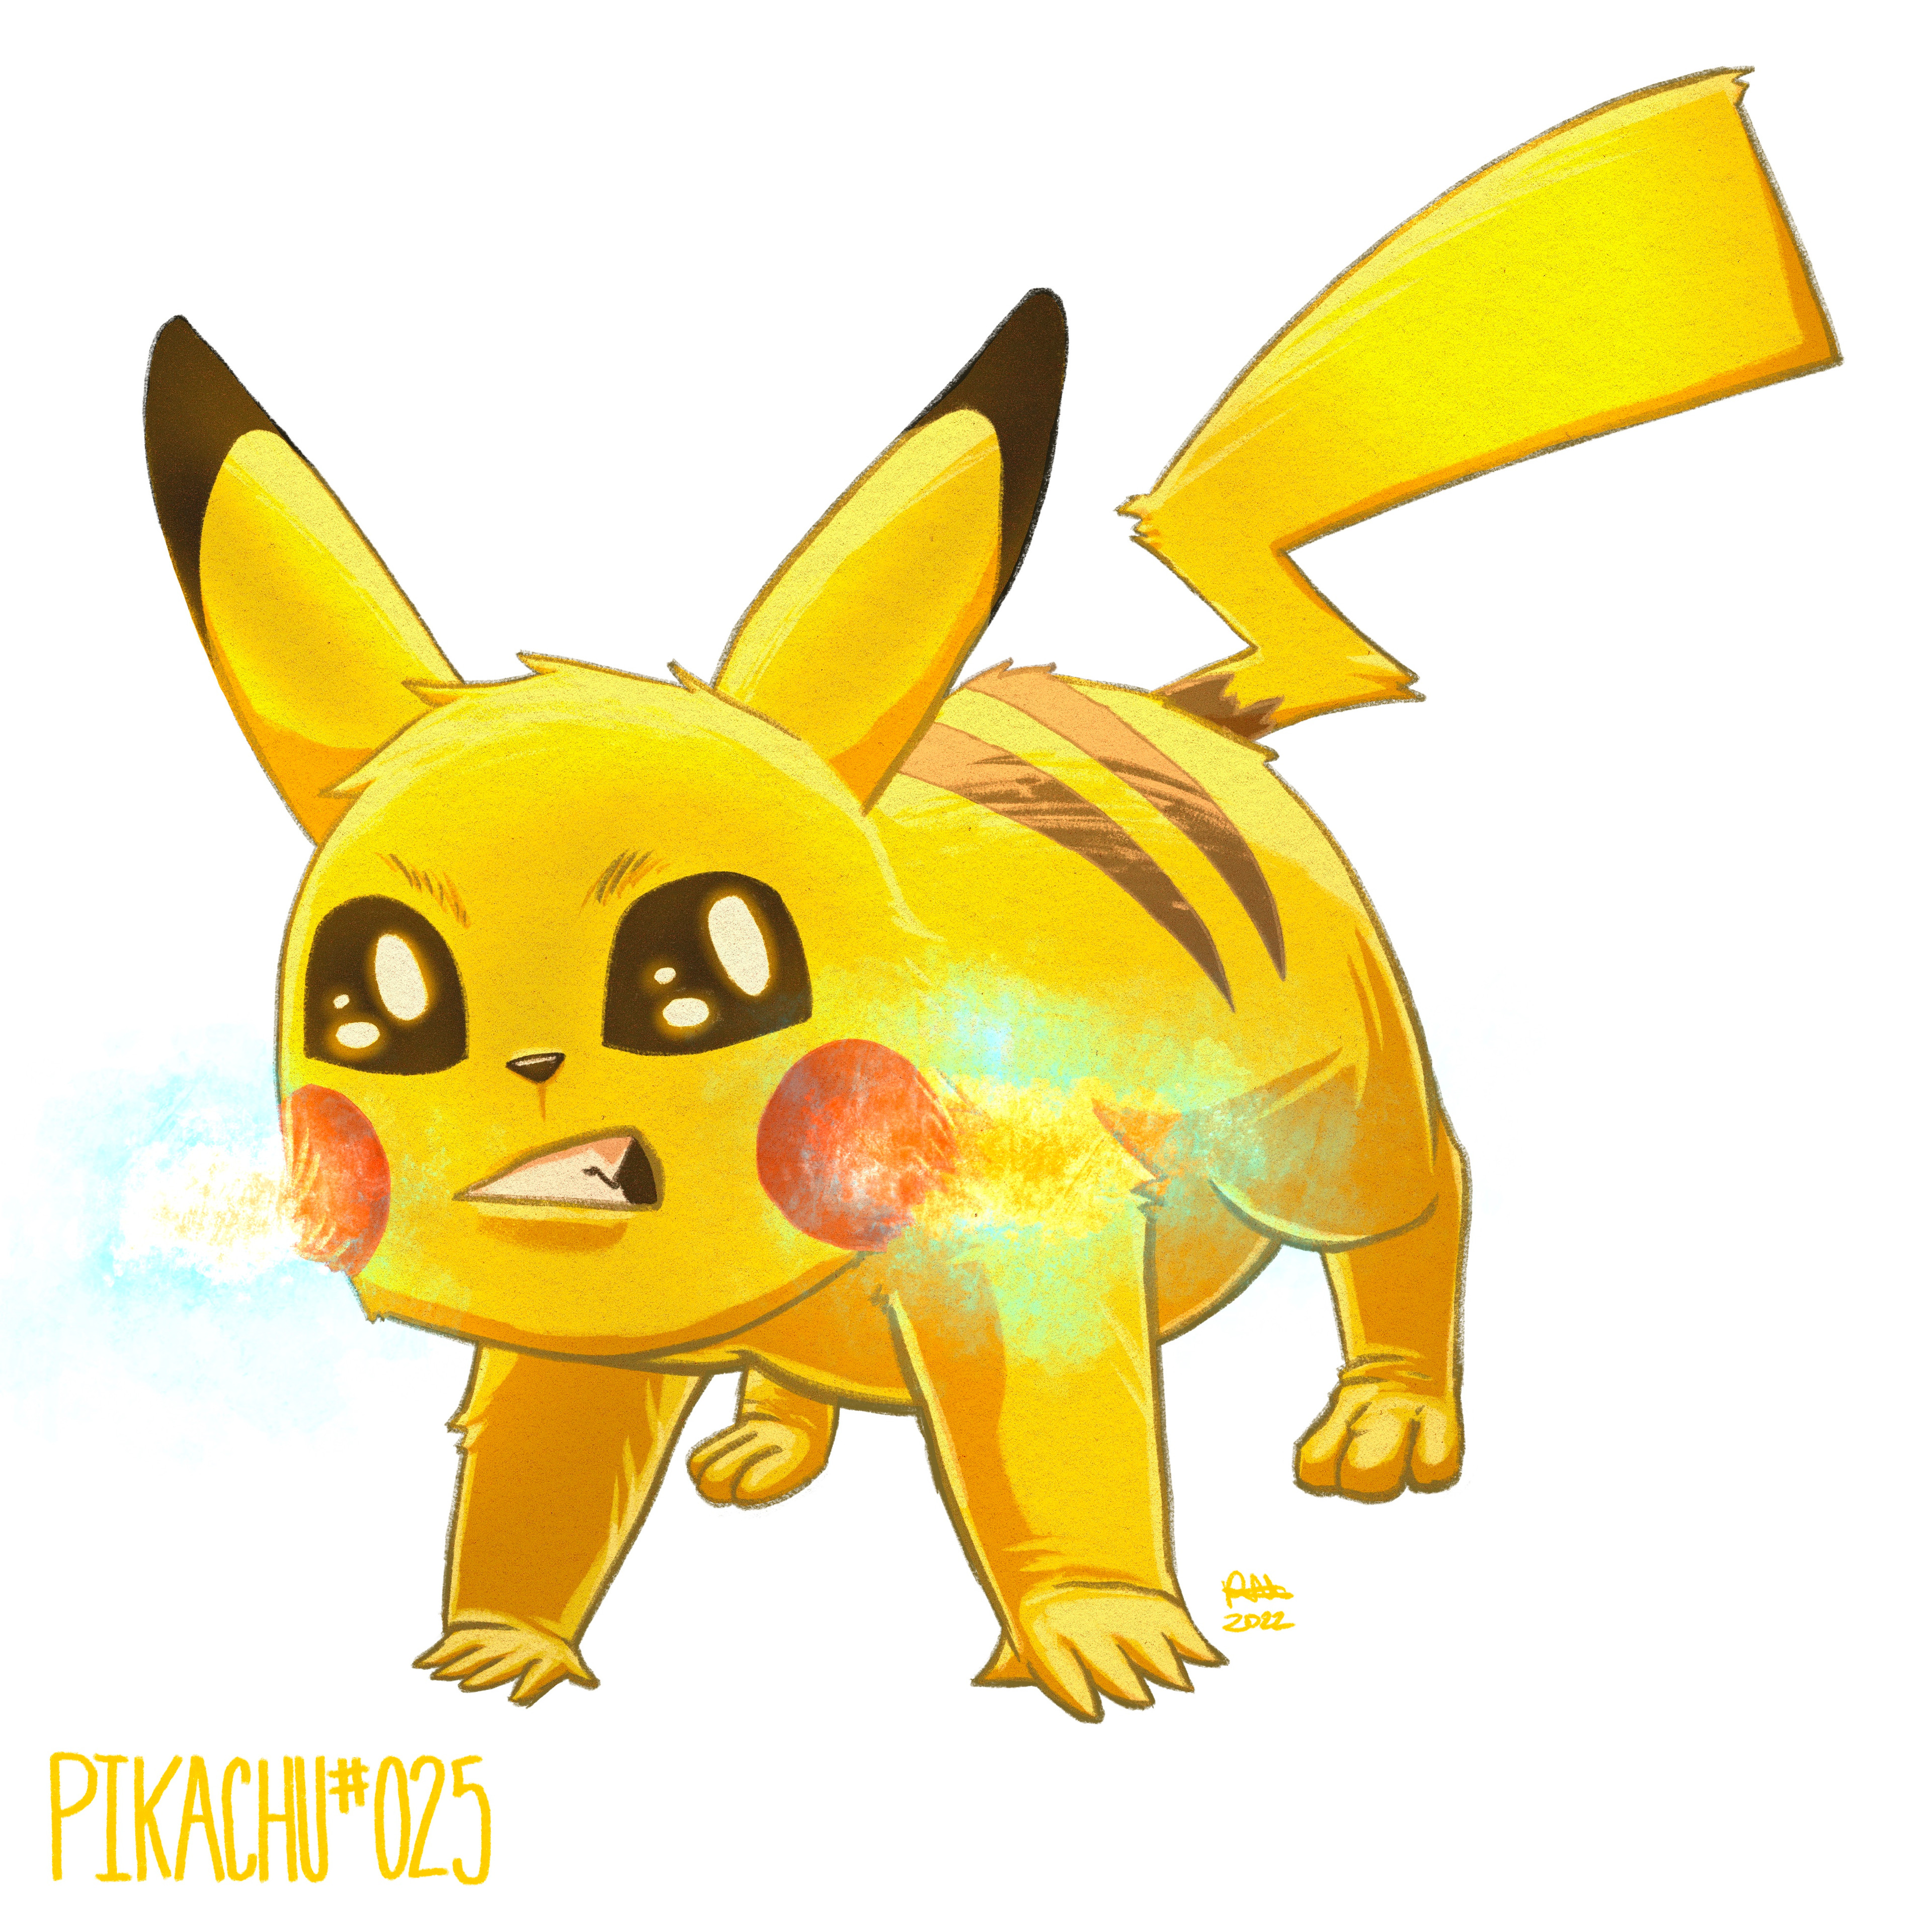 Pikachu - Yellow